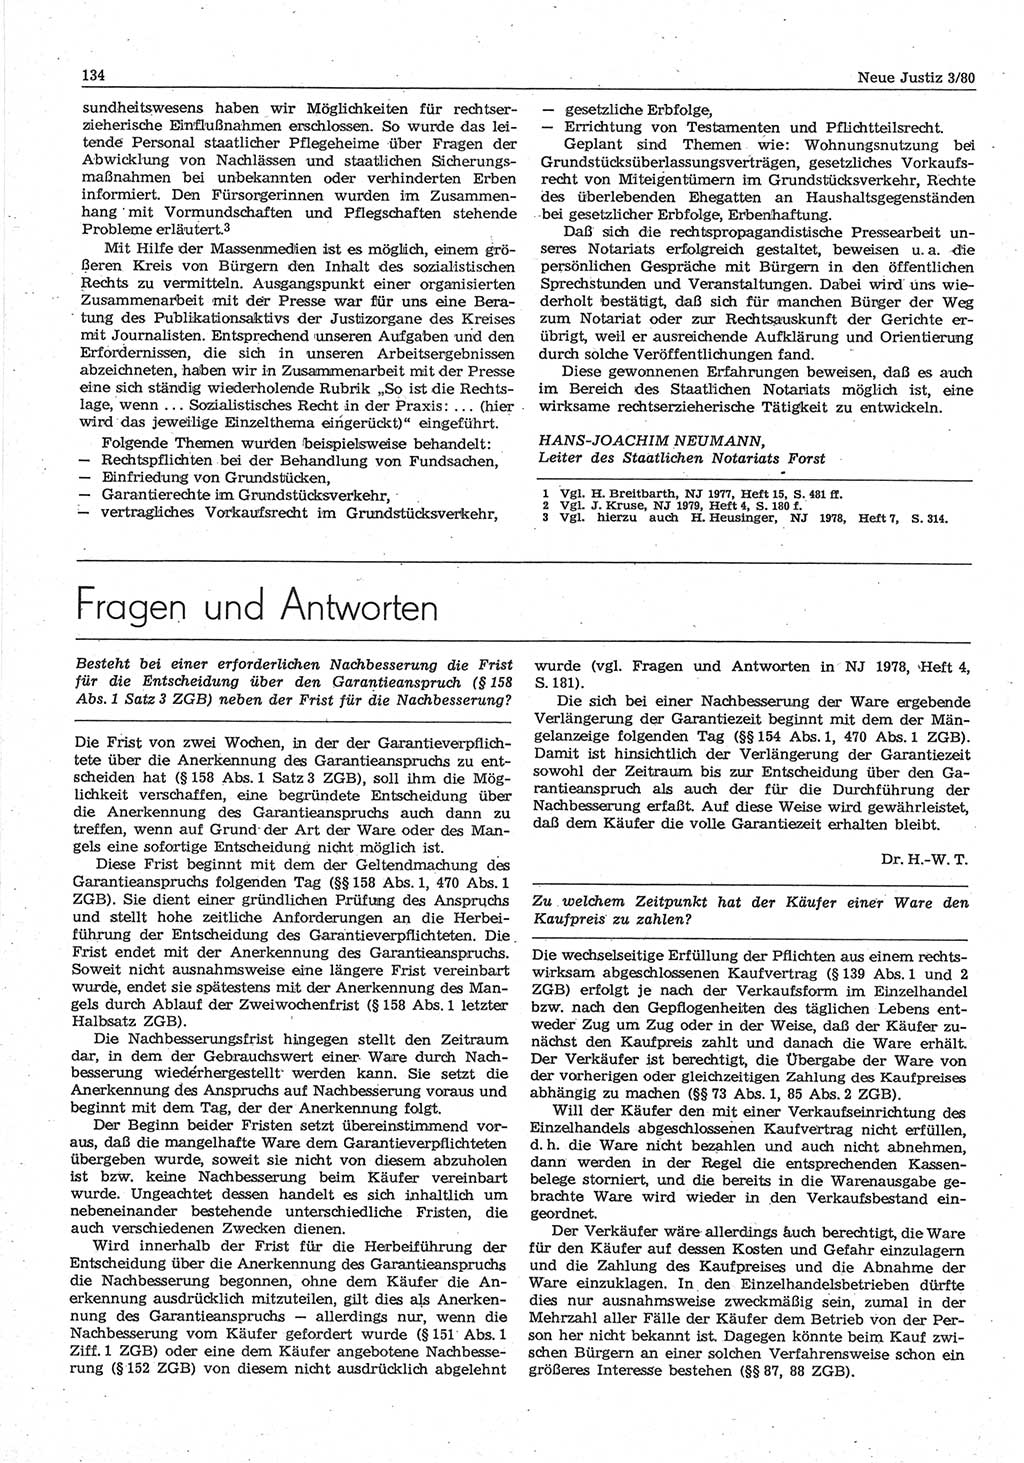 Neue Justiz (NJ), Zeitschrift für sozialistisches Recht und Gesetzlichkeit [Deutsche Demokratische Republik (DDR)], 34. Jahrgang 1980, Seite 134 (NJ DDR 1980, S. 134)